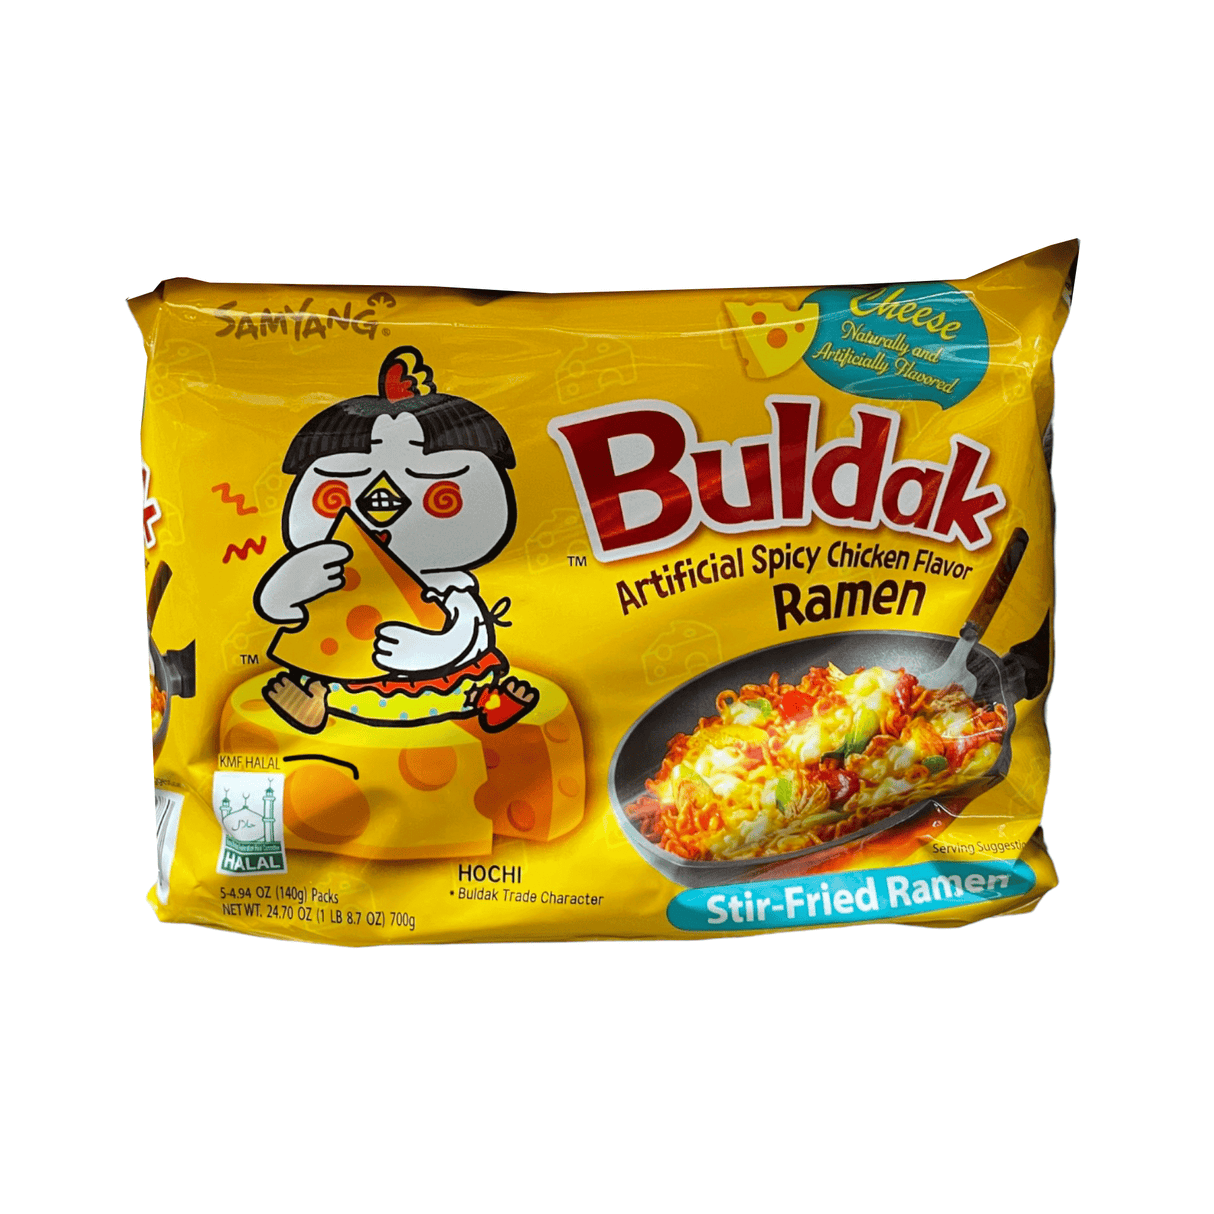 Buldak Spicy Chicken Flavor Ramen